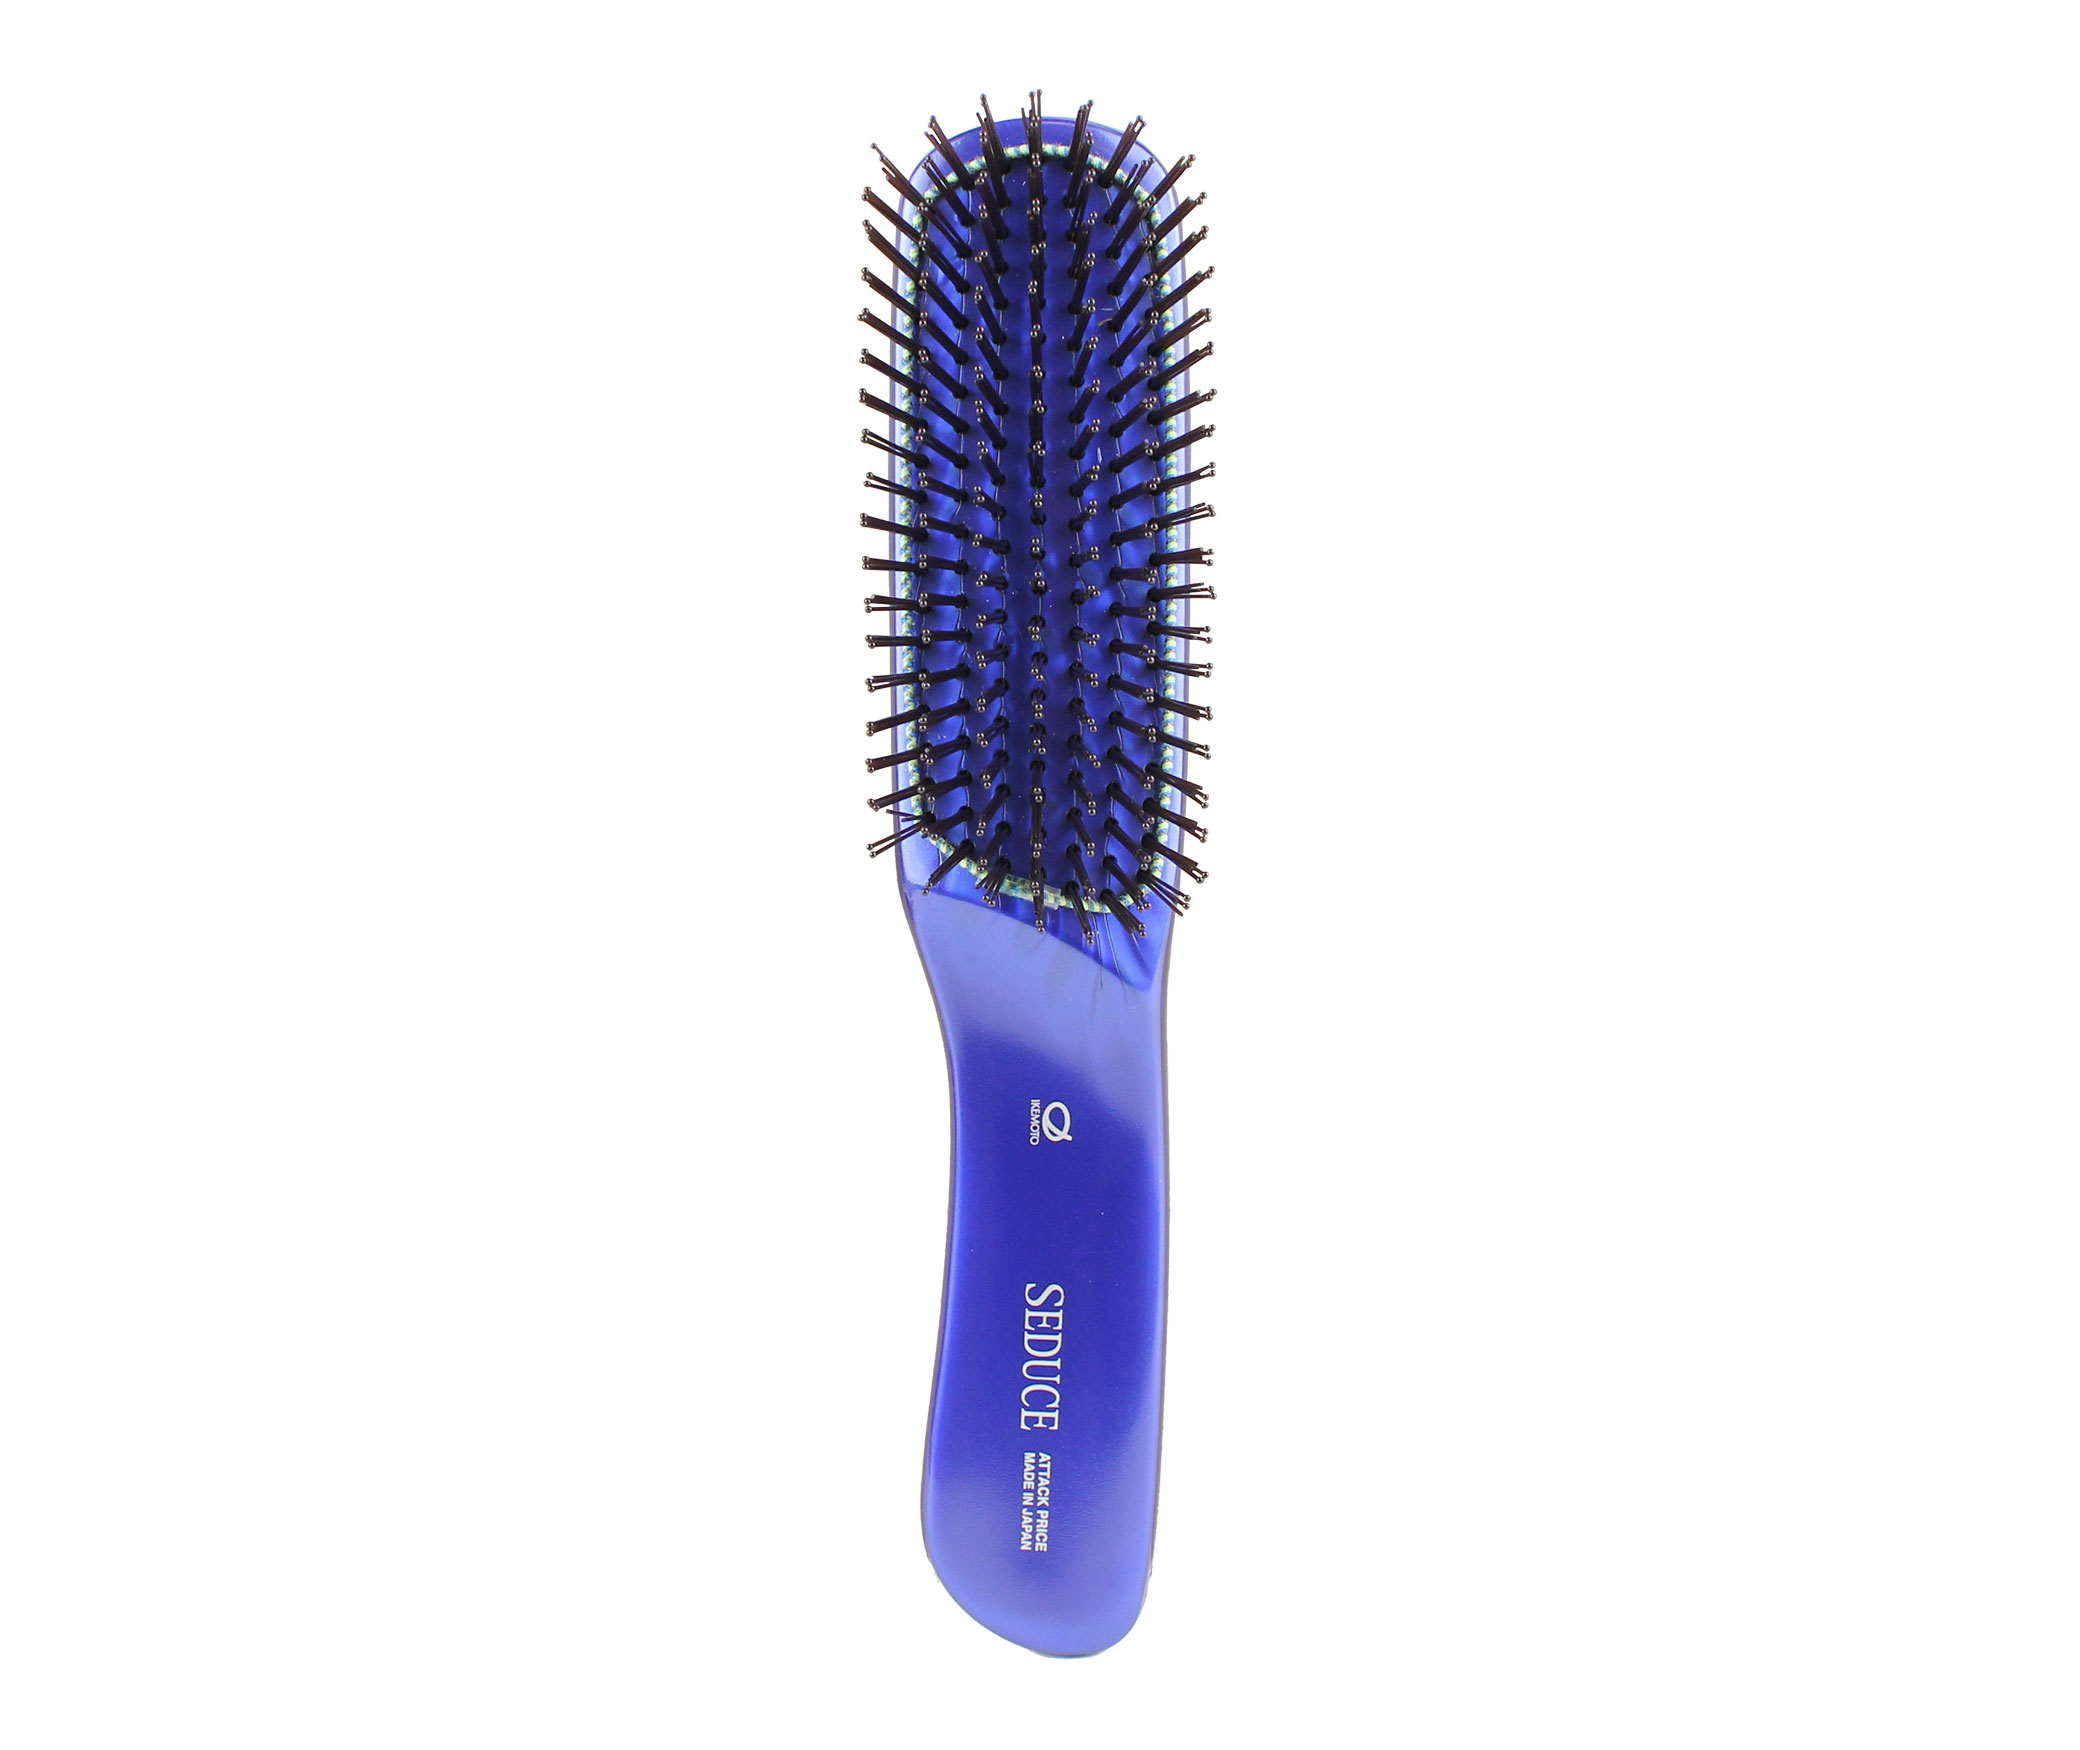 Blue Bristle Brush